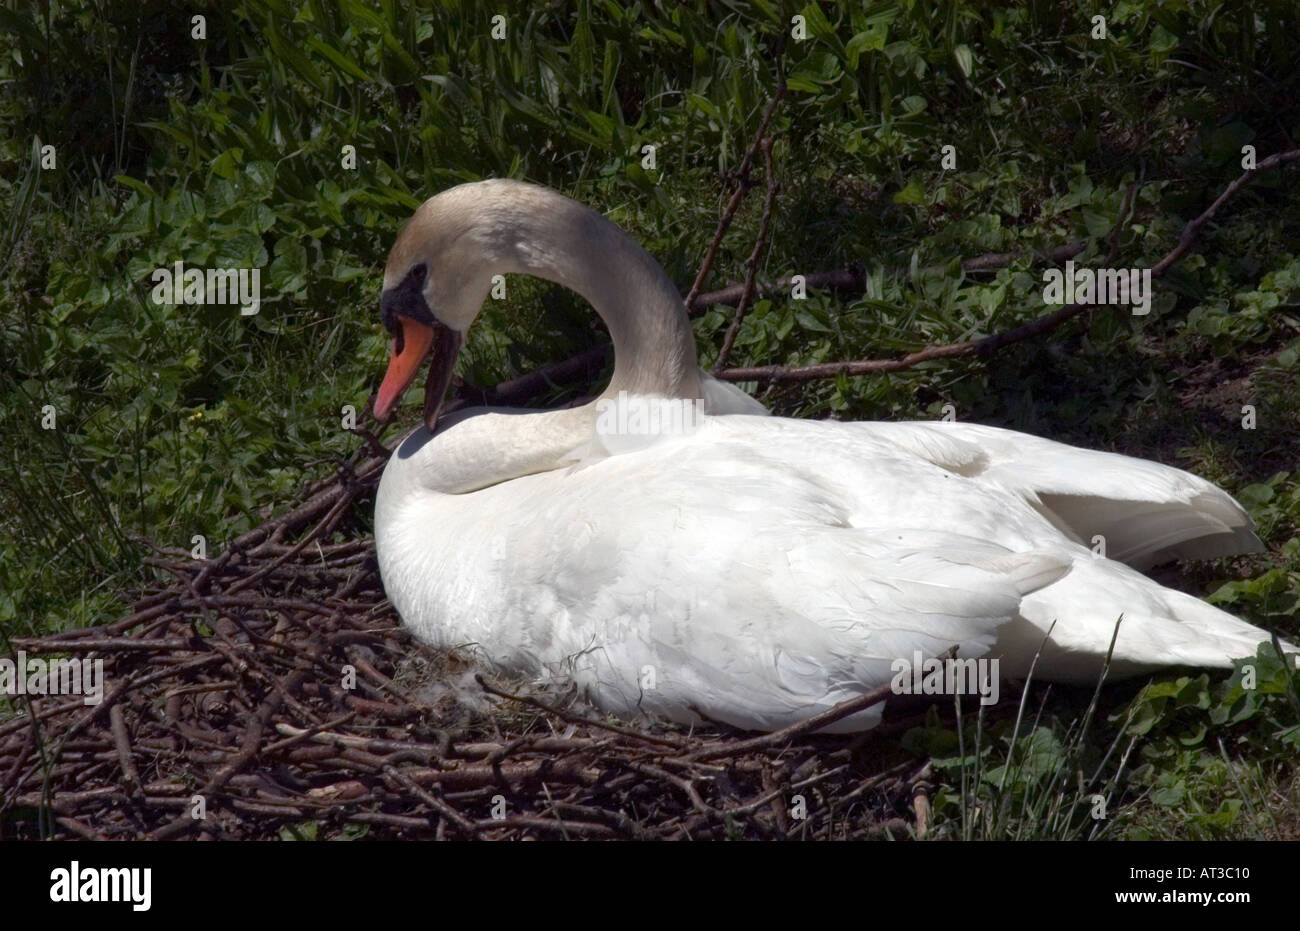 White Swan femelle assis sur son nid de brindilles et de bois Banque D'Images